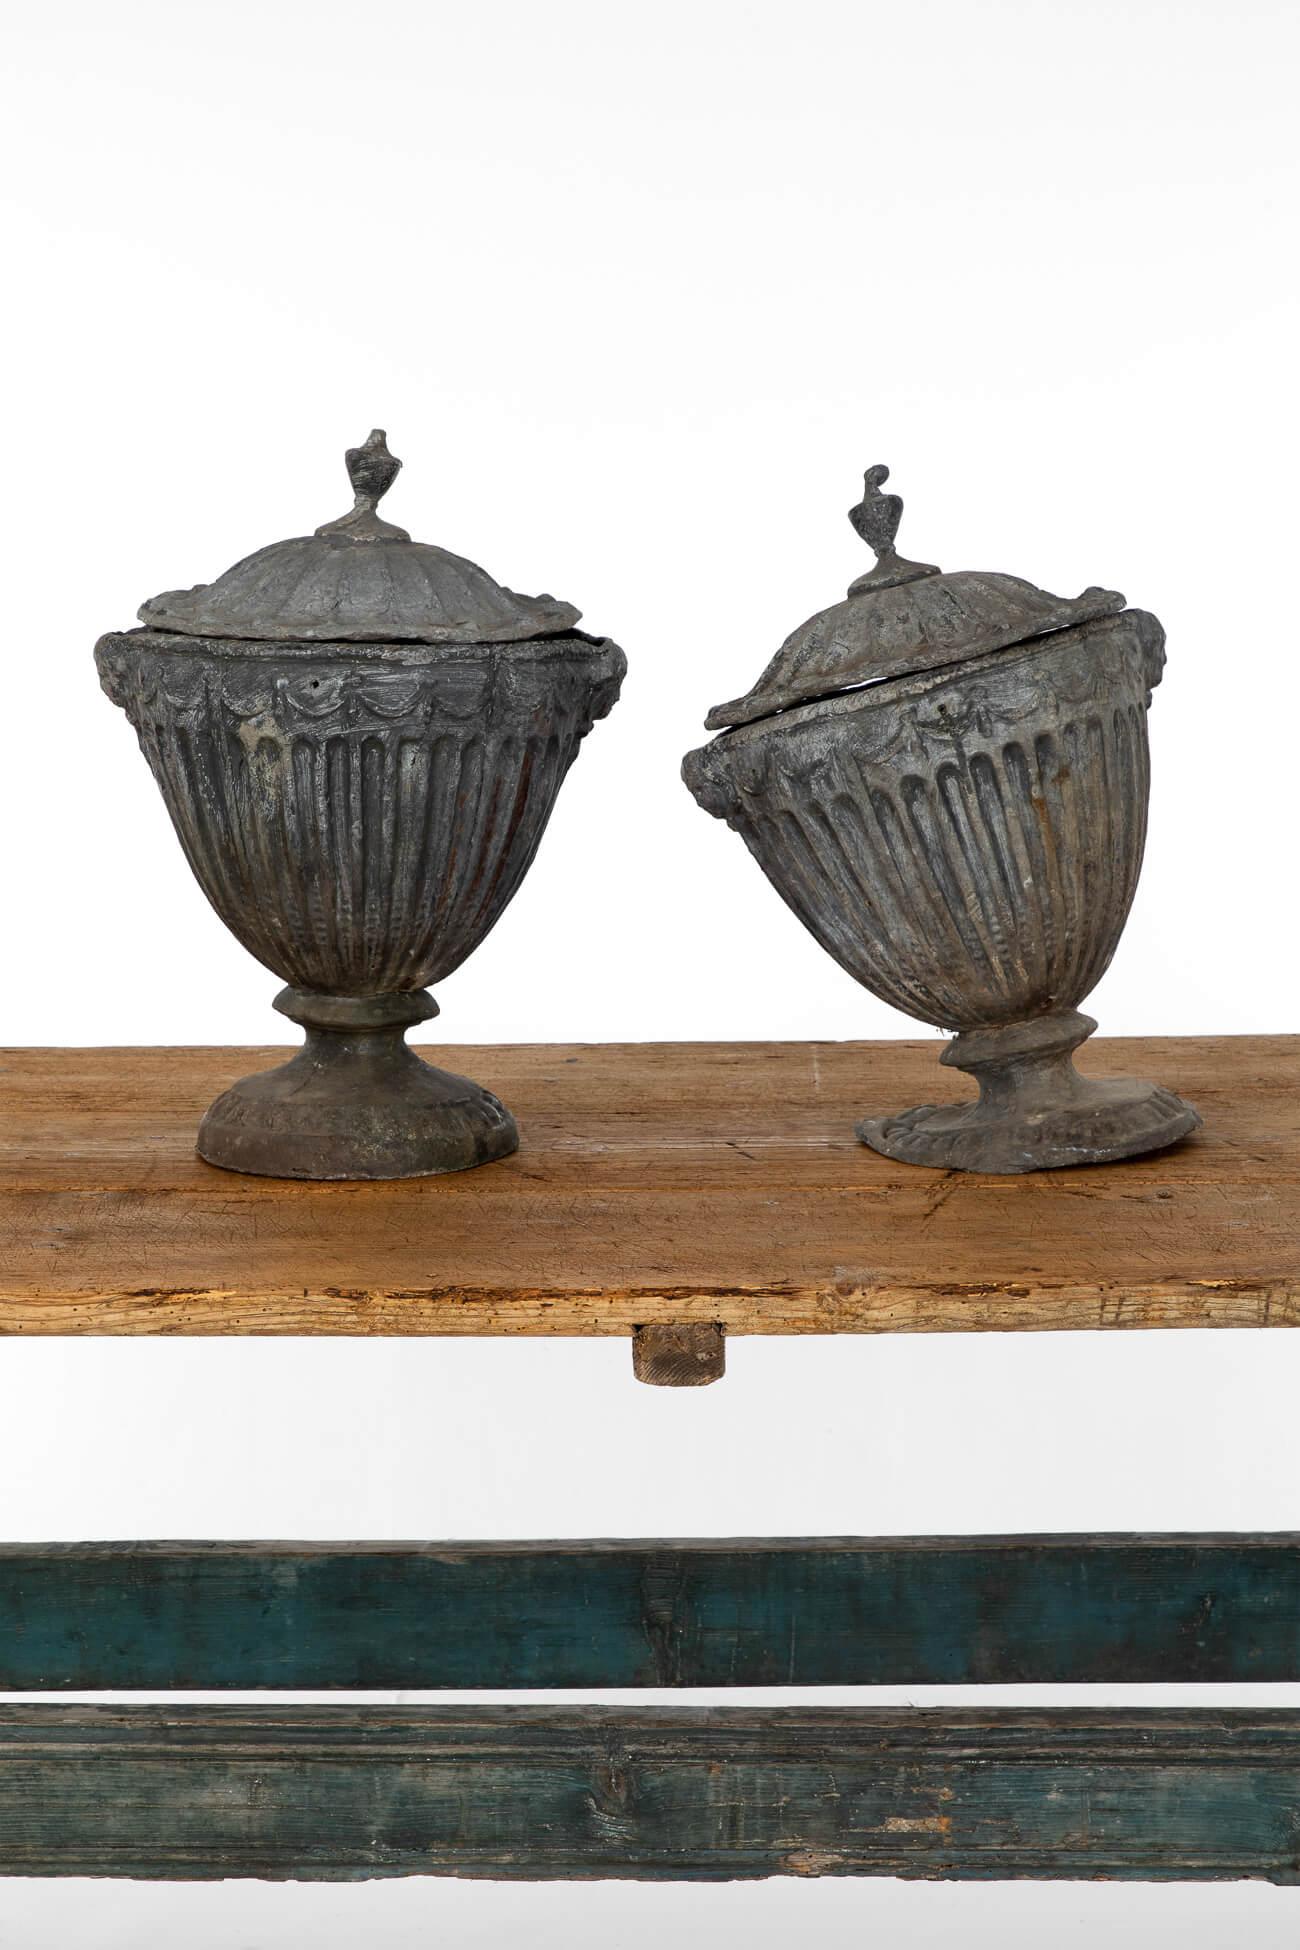 Une fabuleuse paire d'urnes en plomb d'après le design de l'architecte britannique géorgien Robert Adams.

De style néoclassique, les côtés et la base sont décorés de cannelures.

Les urnes sont lourdement lestées, conformément aux modèles originaux